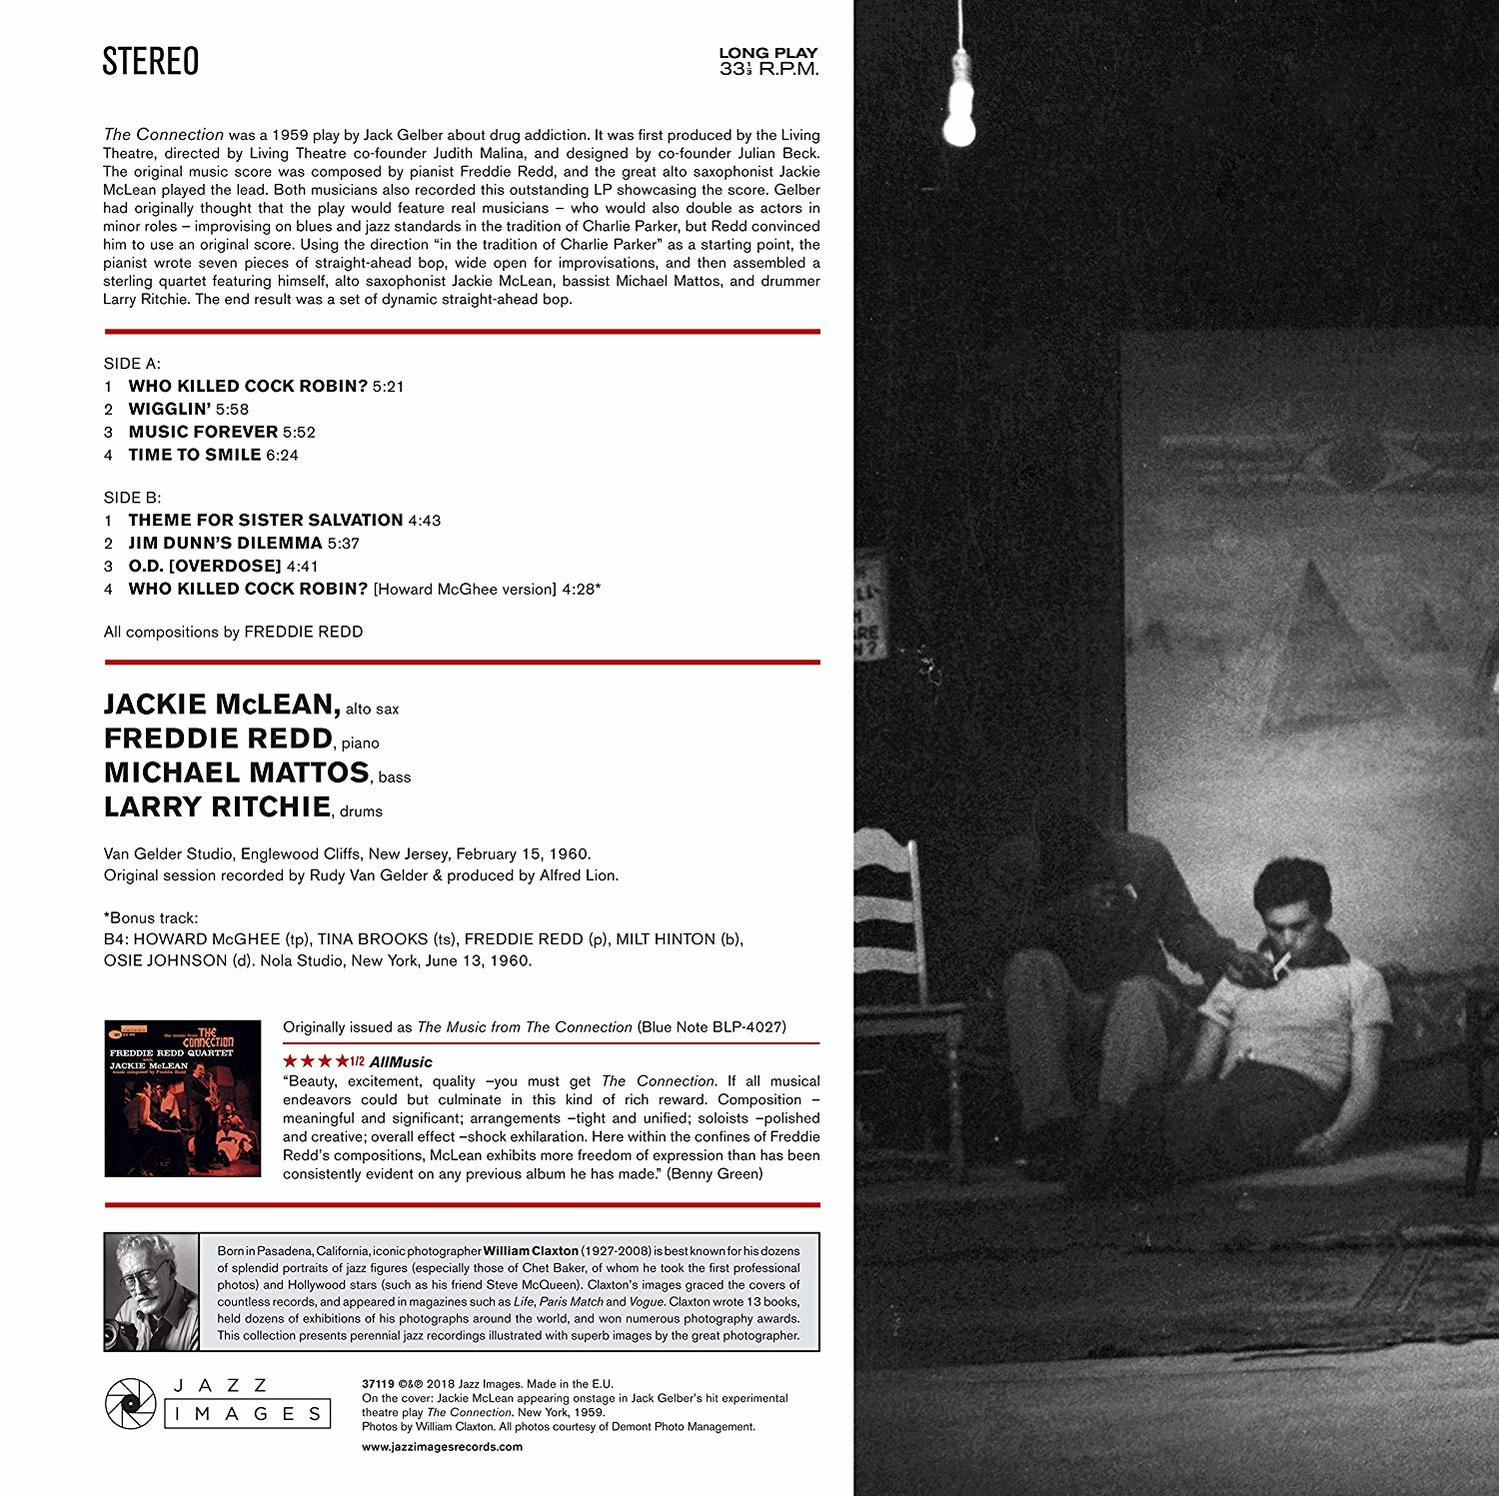 Jackie Connection Mclean, - Freddie Redd The - (Vinyl)